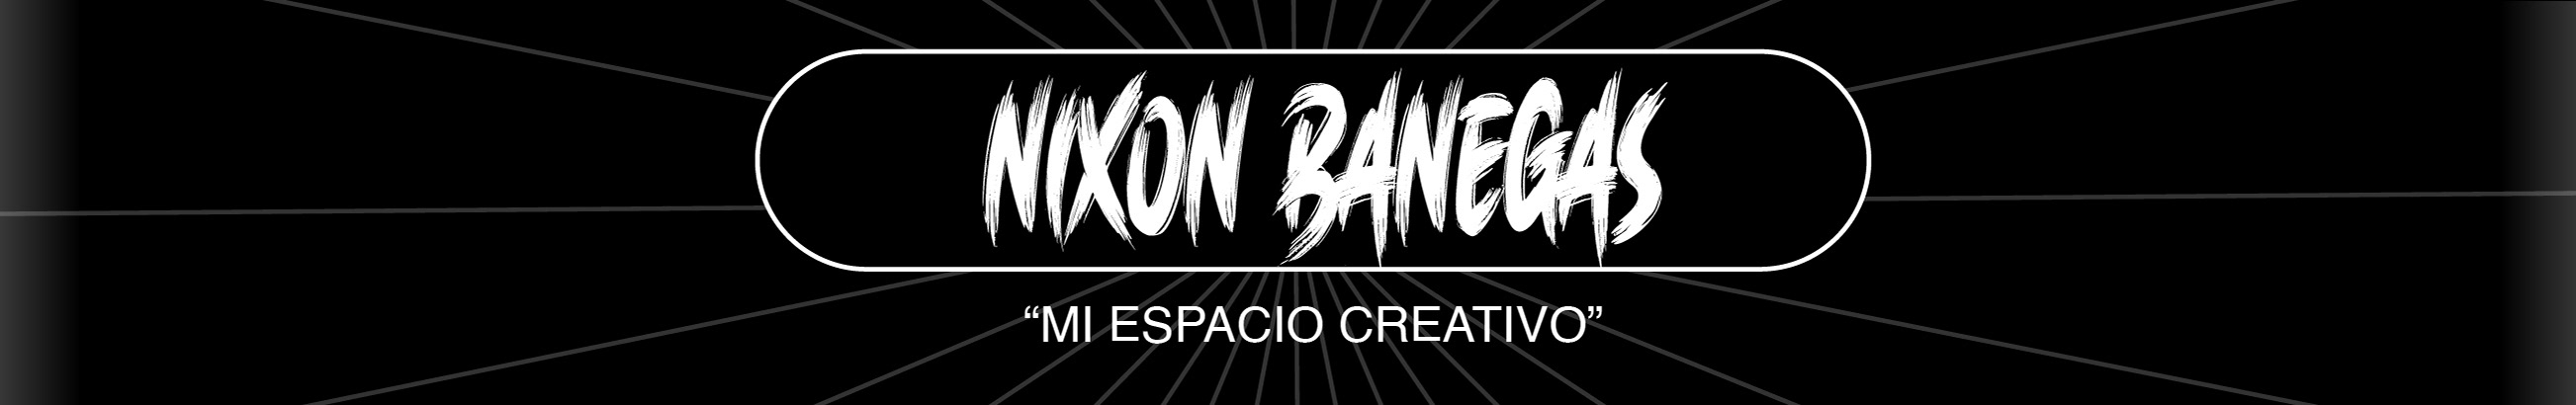 Profil-Banner von Nixon Banegas